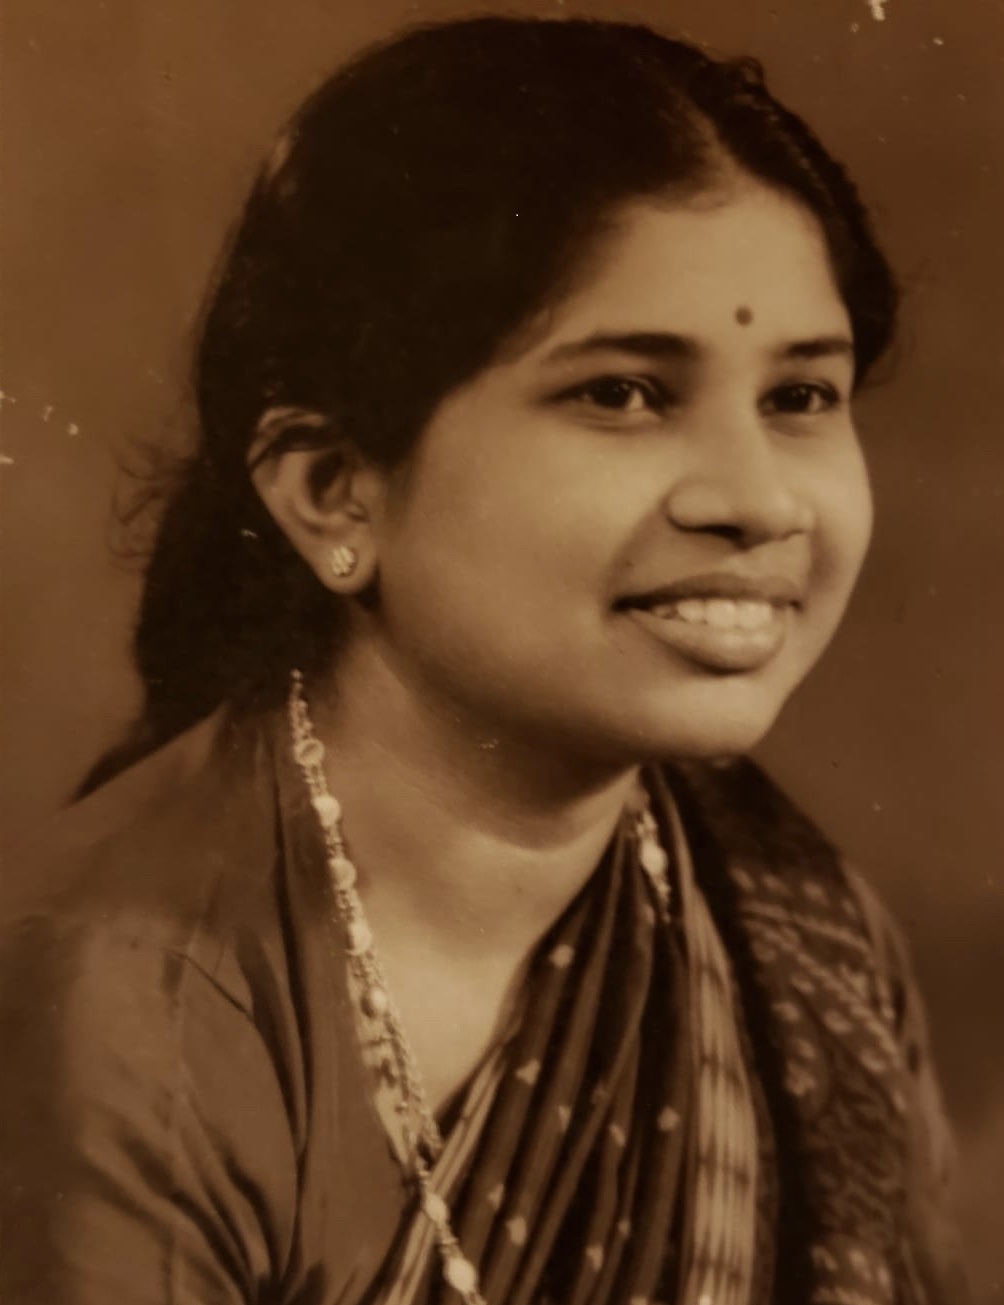 Ms. Thangaratnam Maheswaran